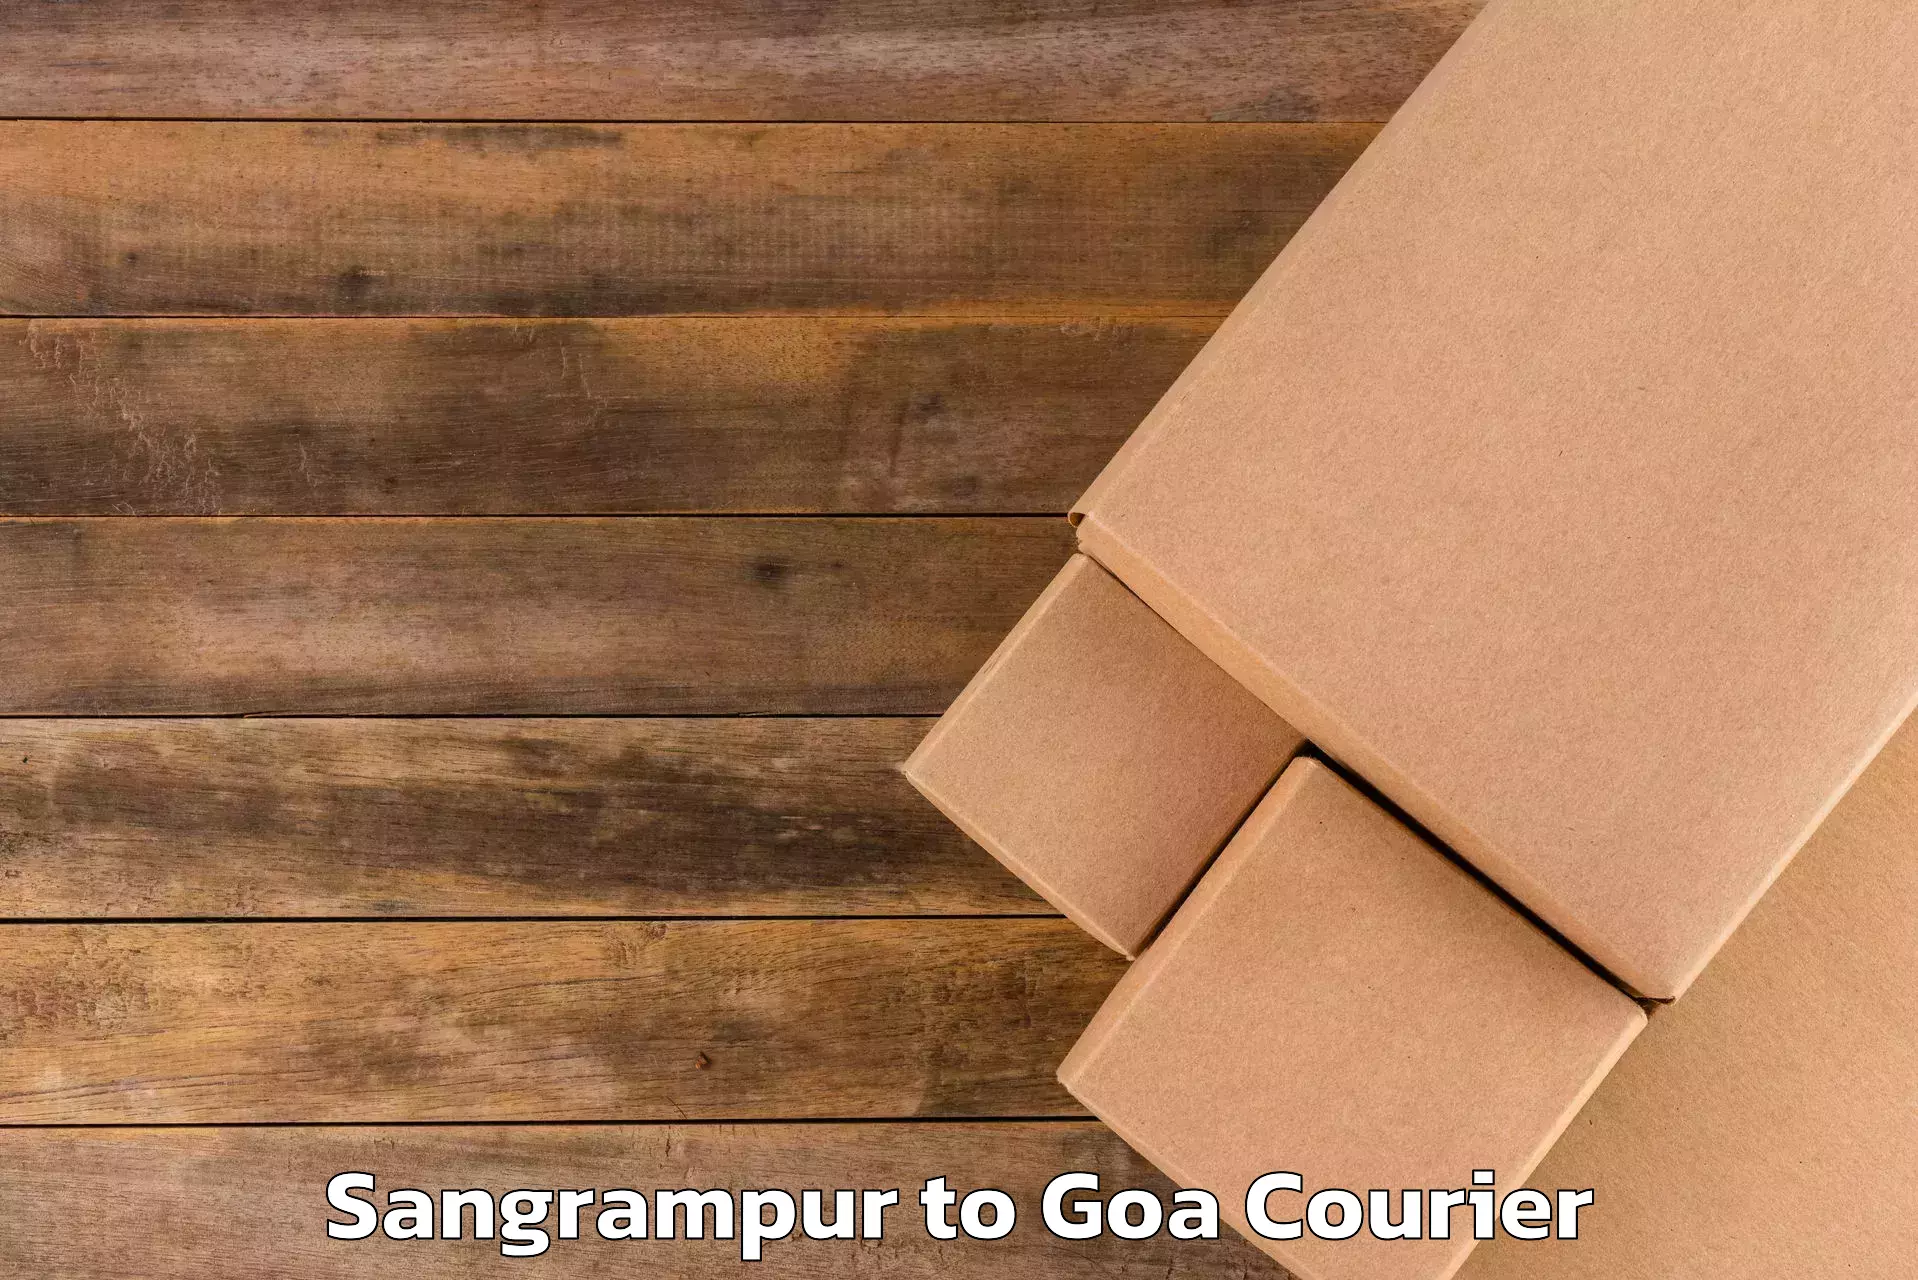 Baggage transport scheduler Sangrampur to Margao